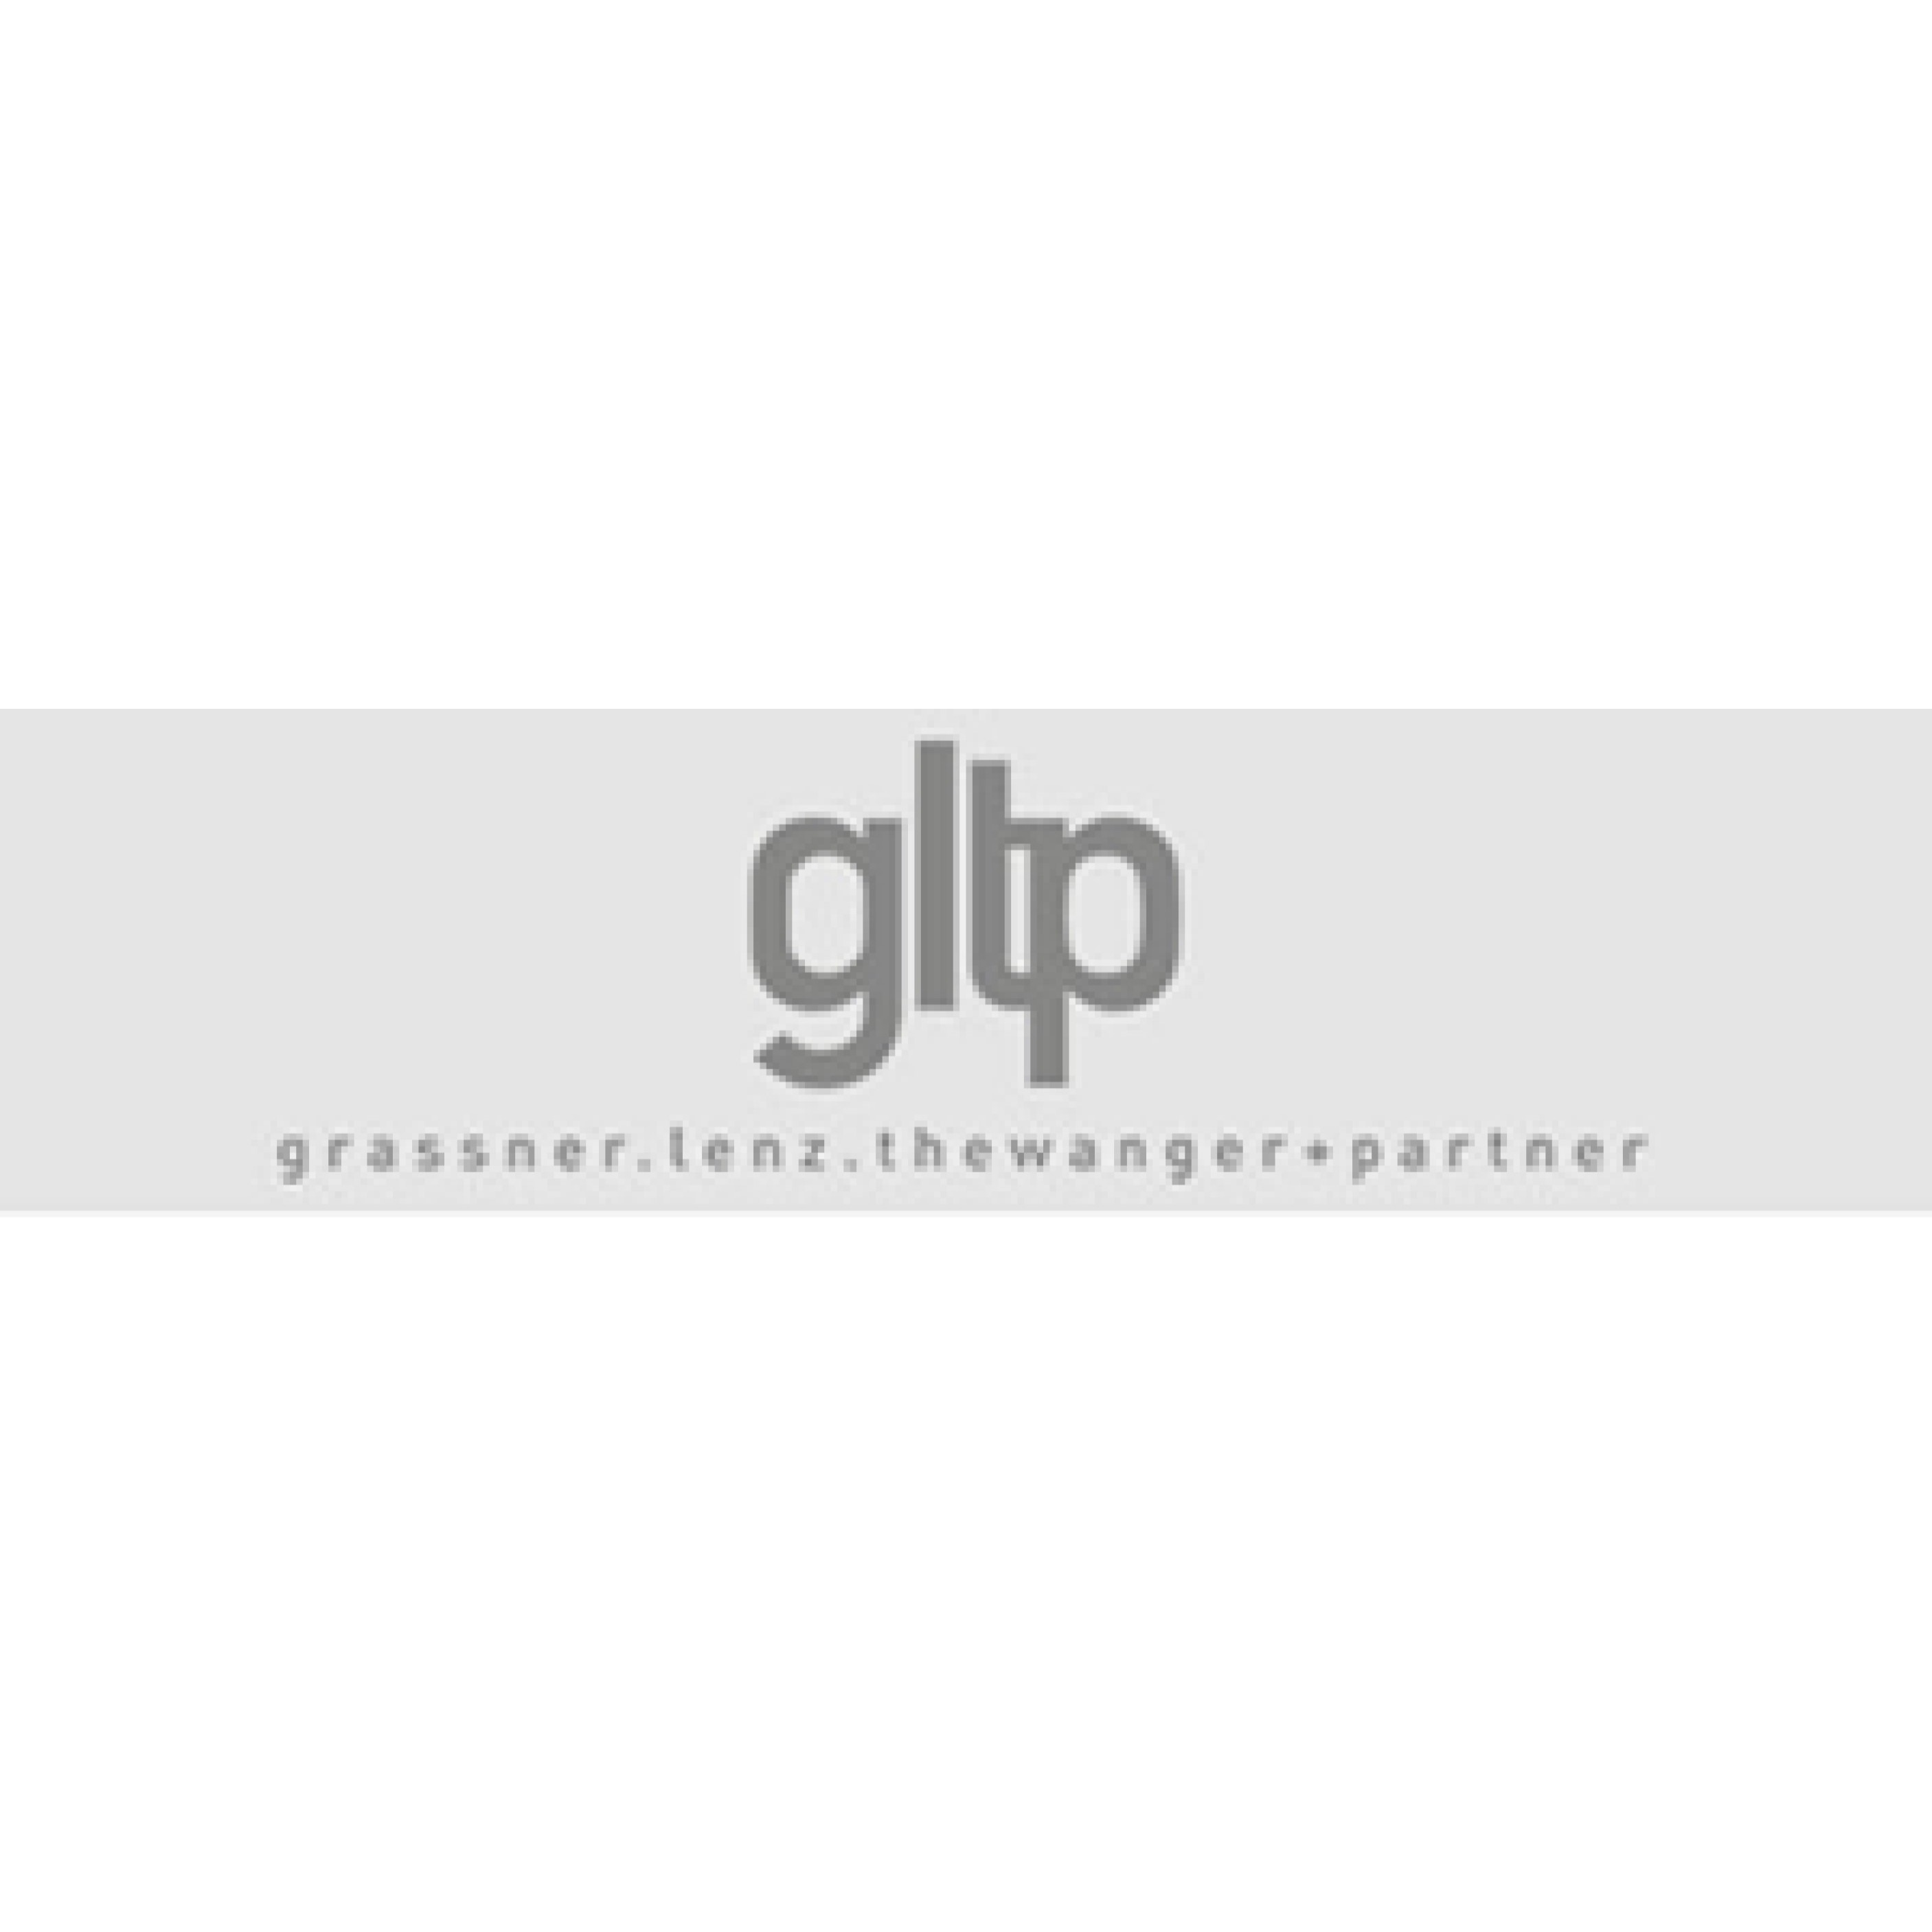 GLTP Grassner, Lenz, Thewanger & Partner